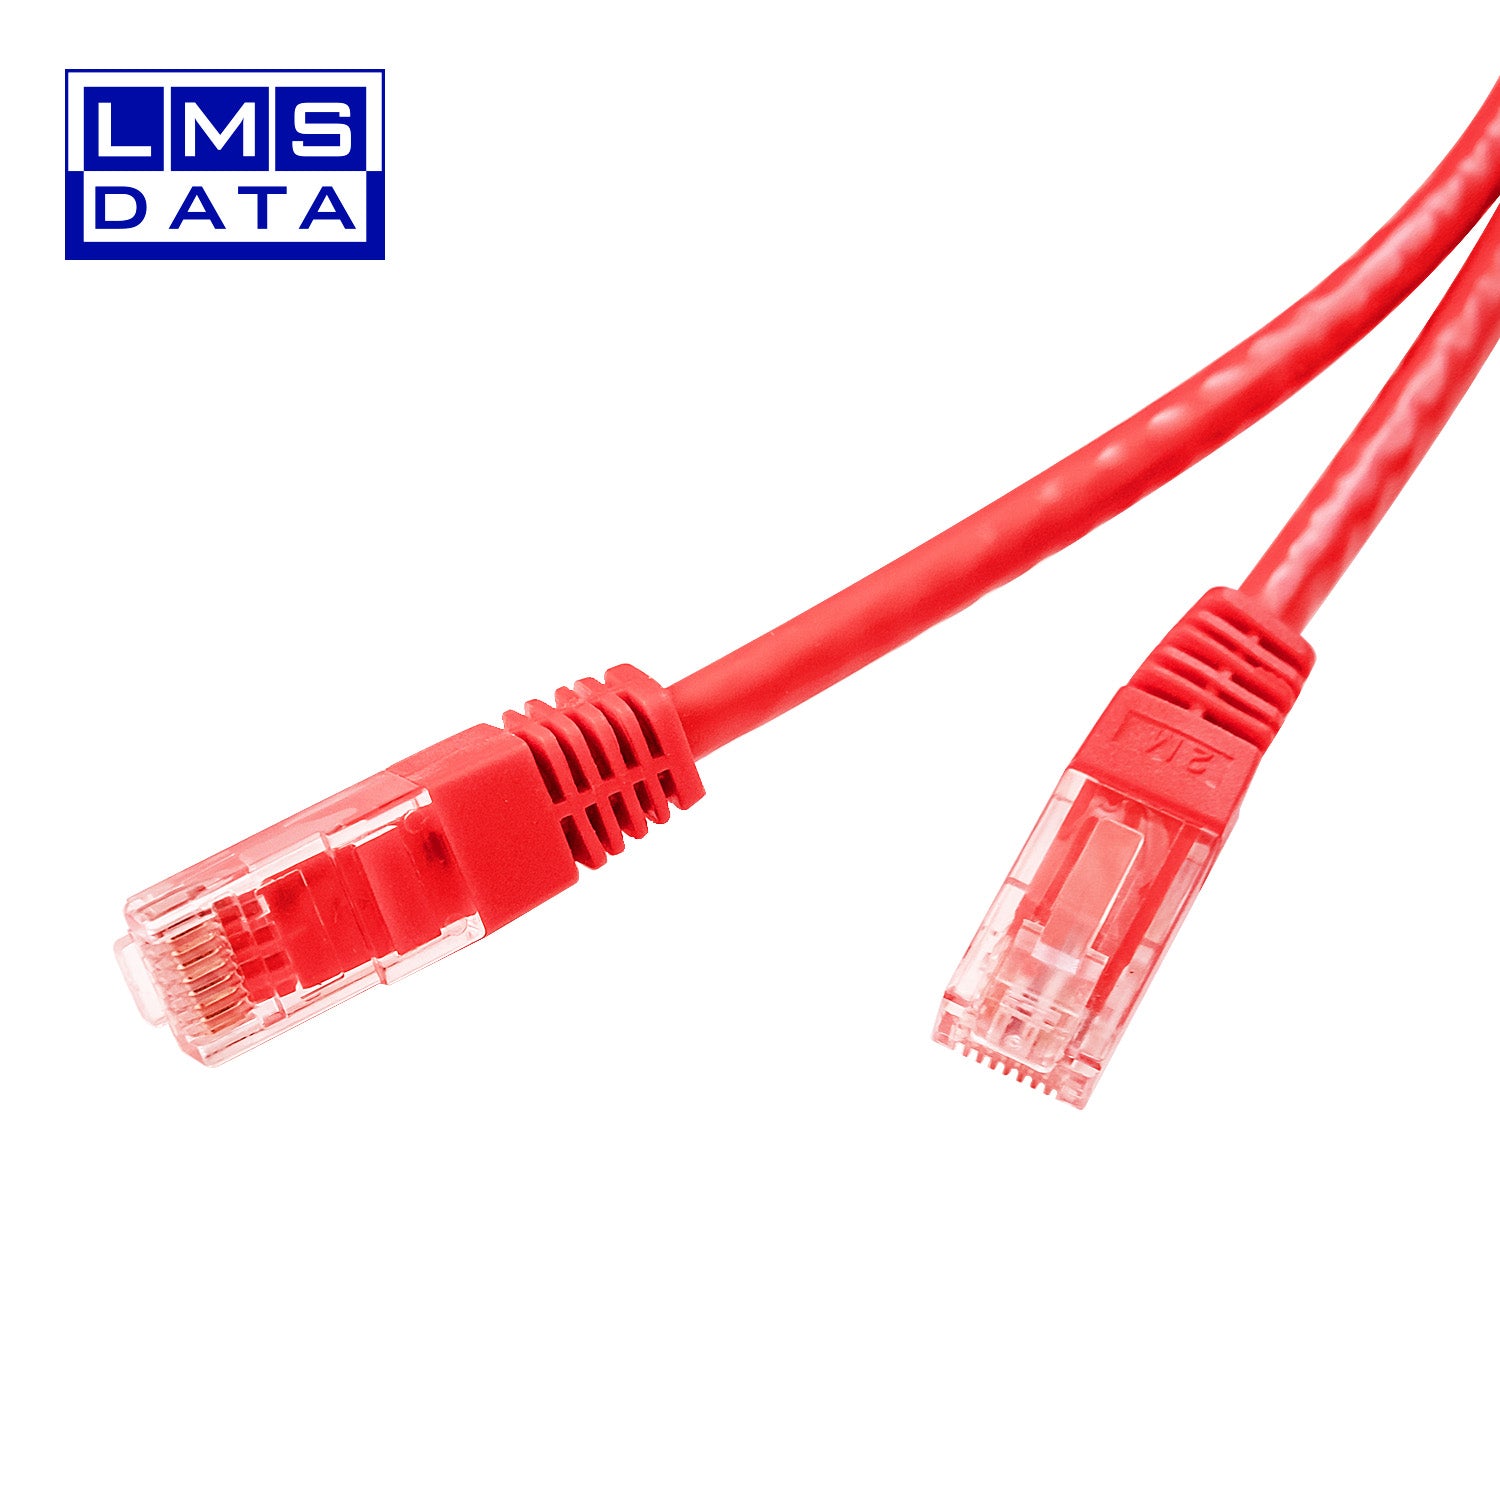 20m LMS Data Ethernet Cat5e RJ45 UTP Patch cable cord, LAN 10/100/1000Mbit/s Cable suitable - Cable RJ45 Cat 5E 20m